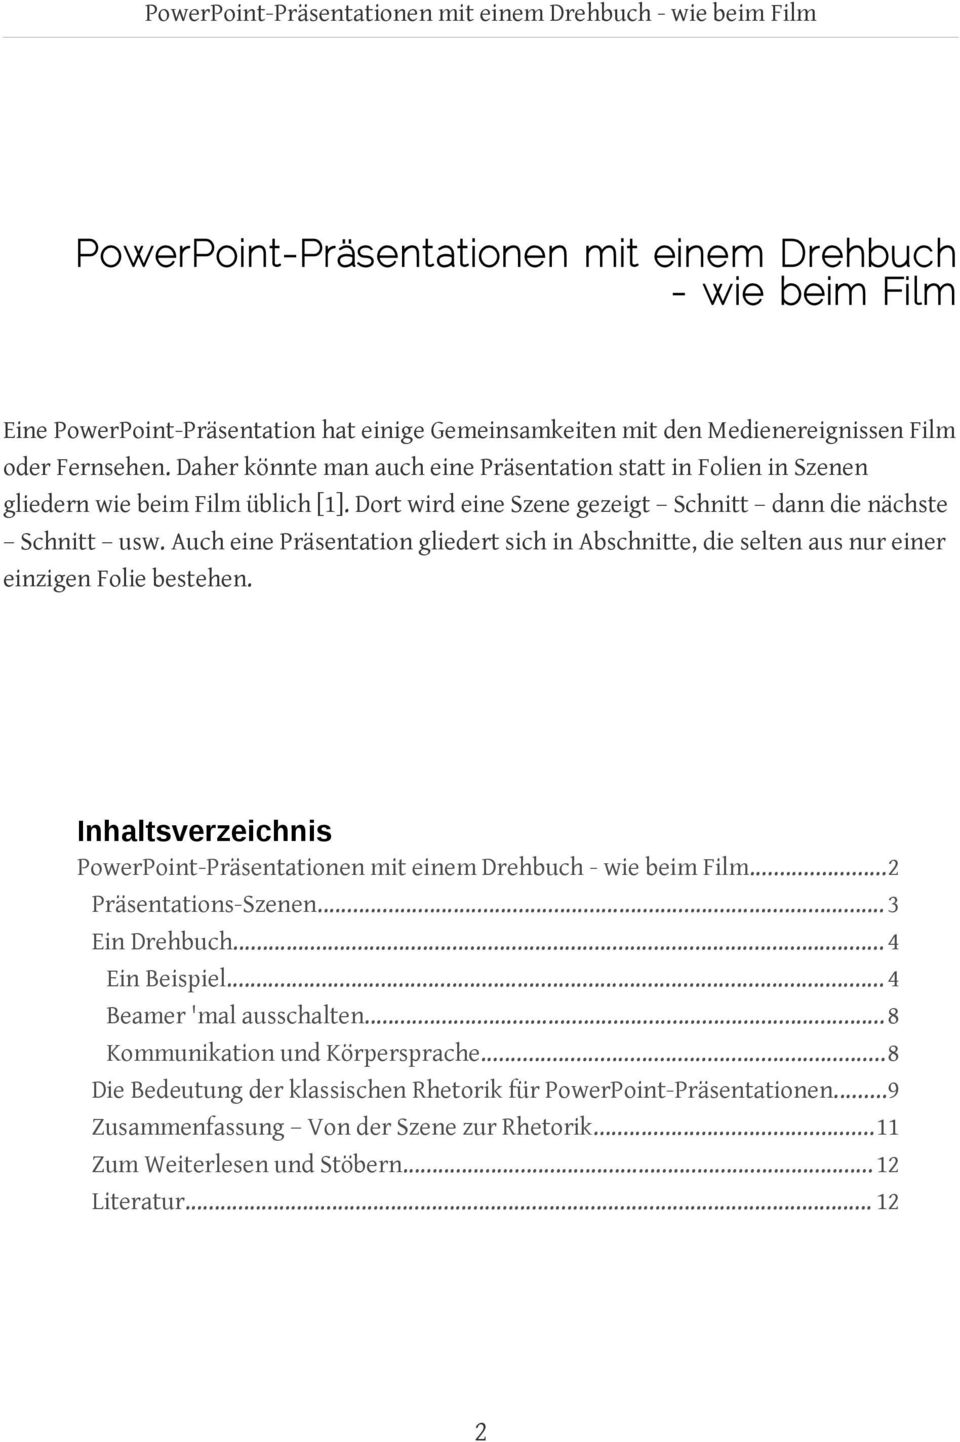 Design Von Powerpoint Folien Und Vortragen Pdf Free Download